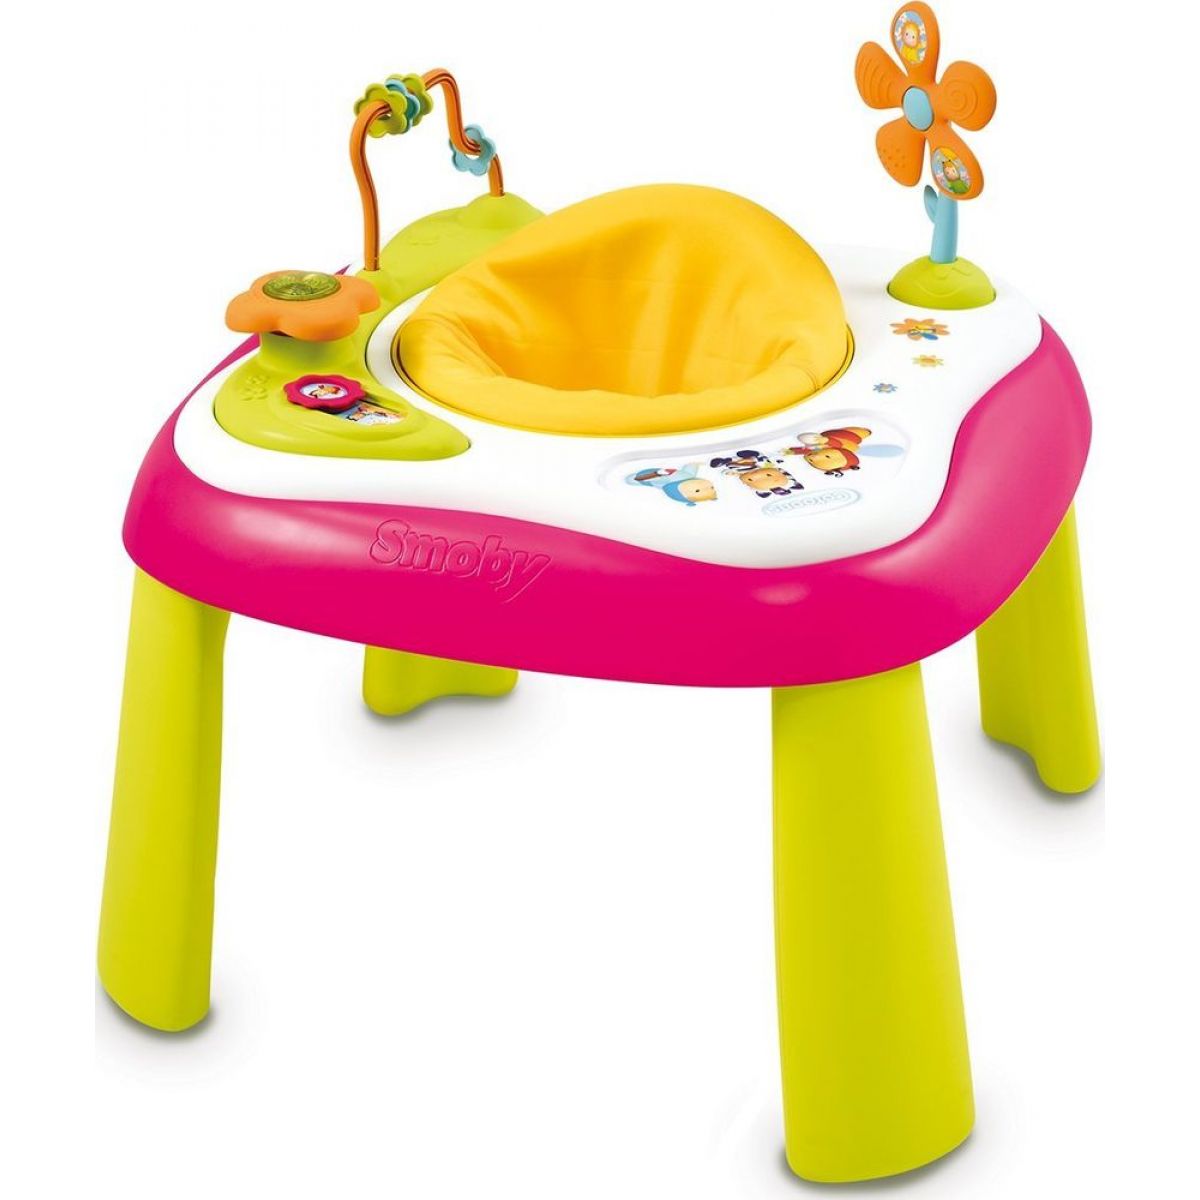 Smoby Cotoons Multifunkční hrací stůl se sedátkem - Růžový